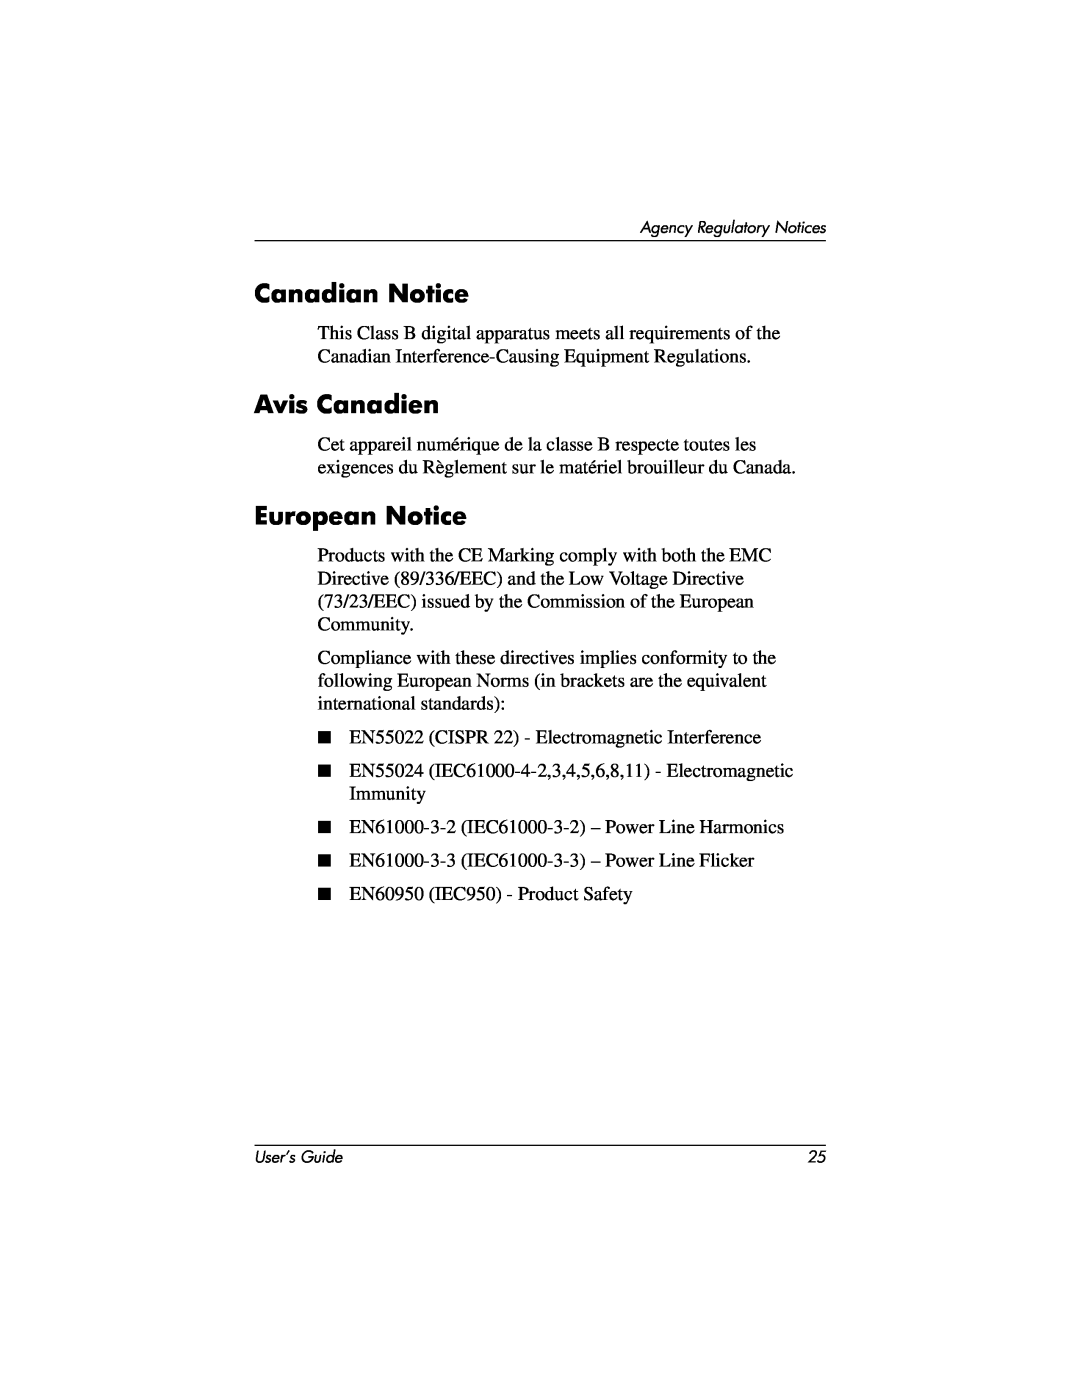 Compaq 2025 manual Canadian Notice, Avis Canadien, European Notice 